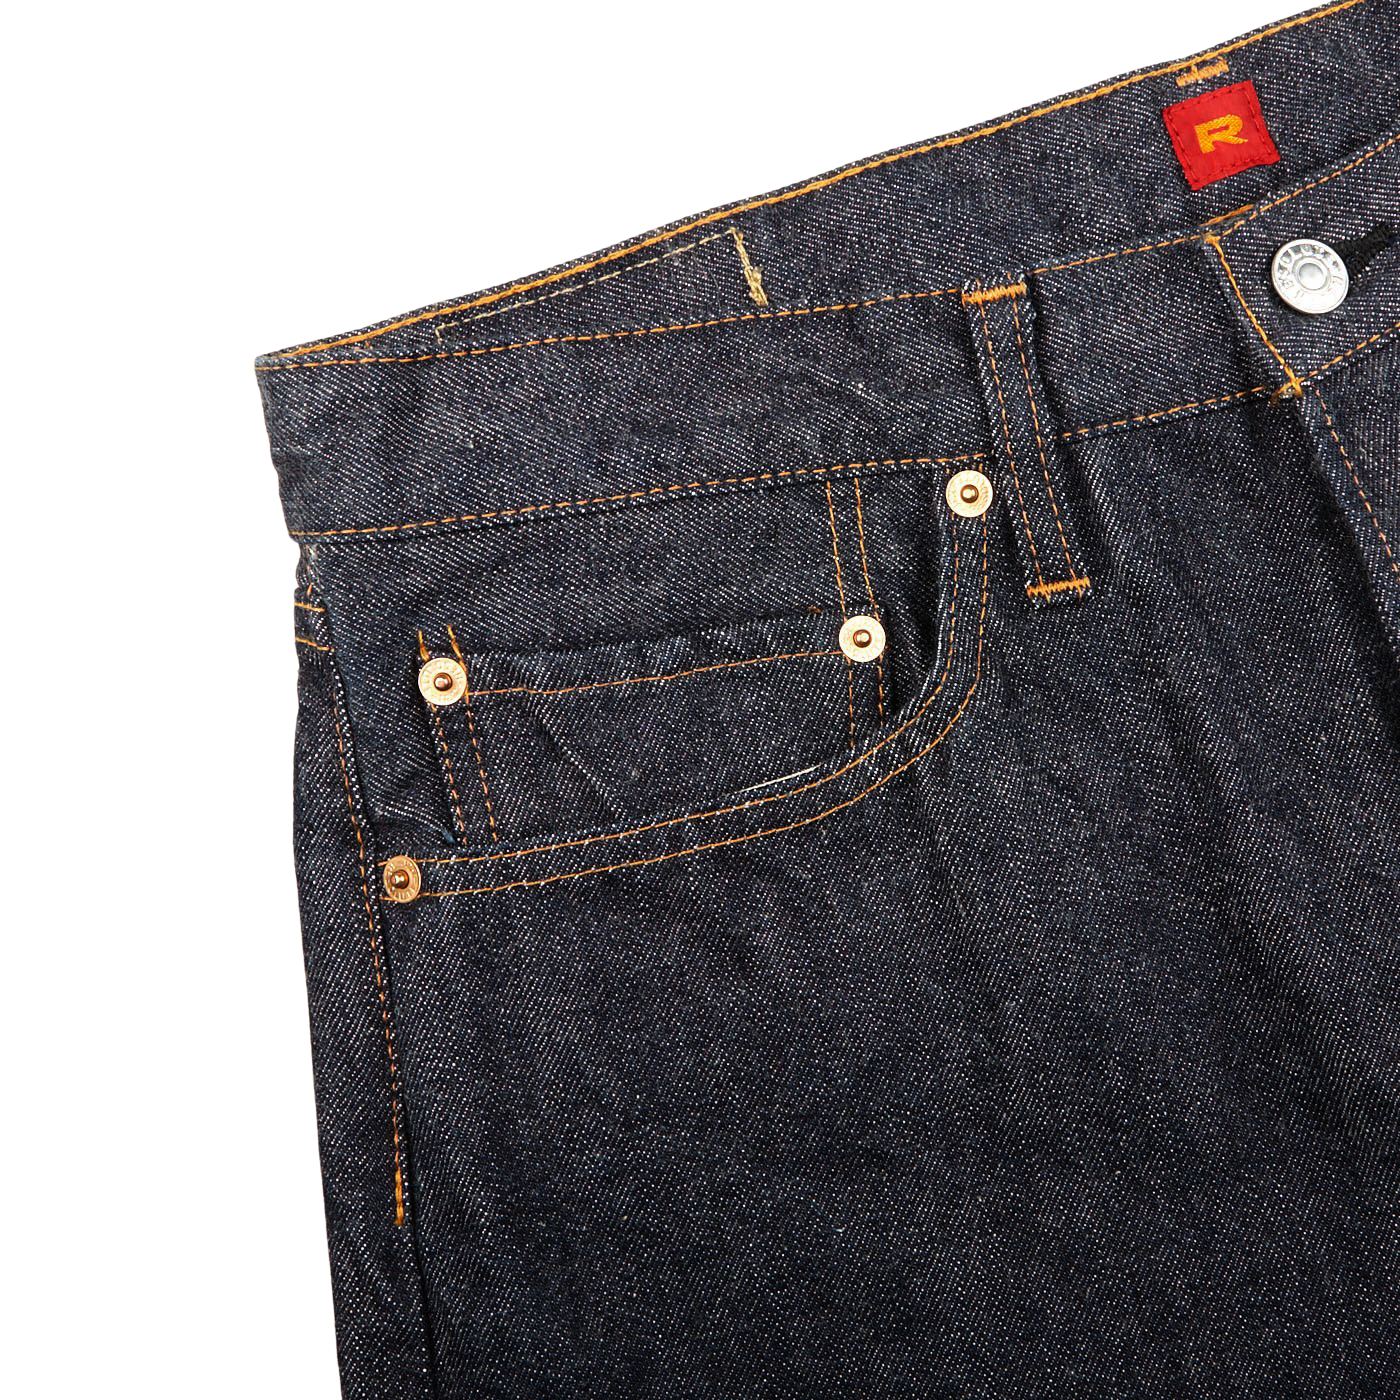 Dark Blue Cotton 710 One Wash Jeans - 31x34